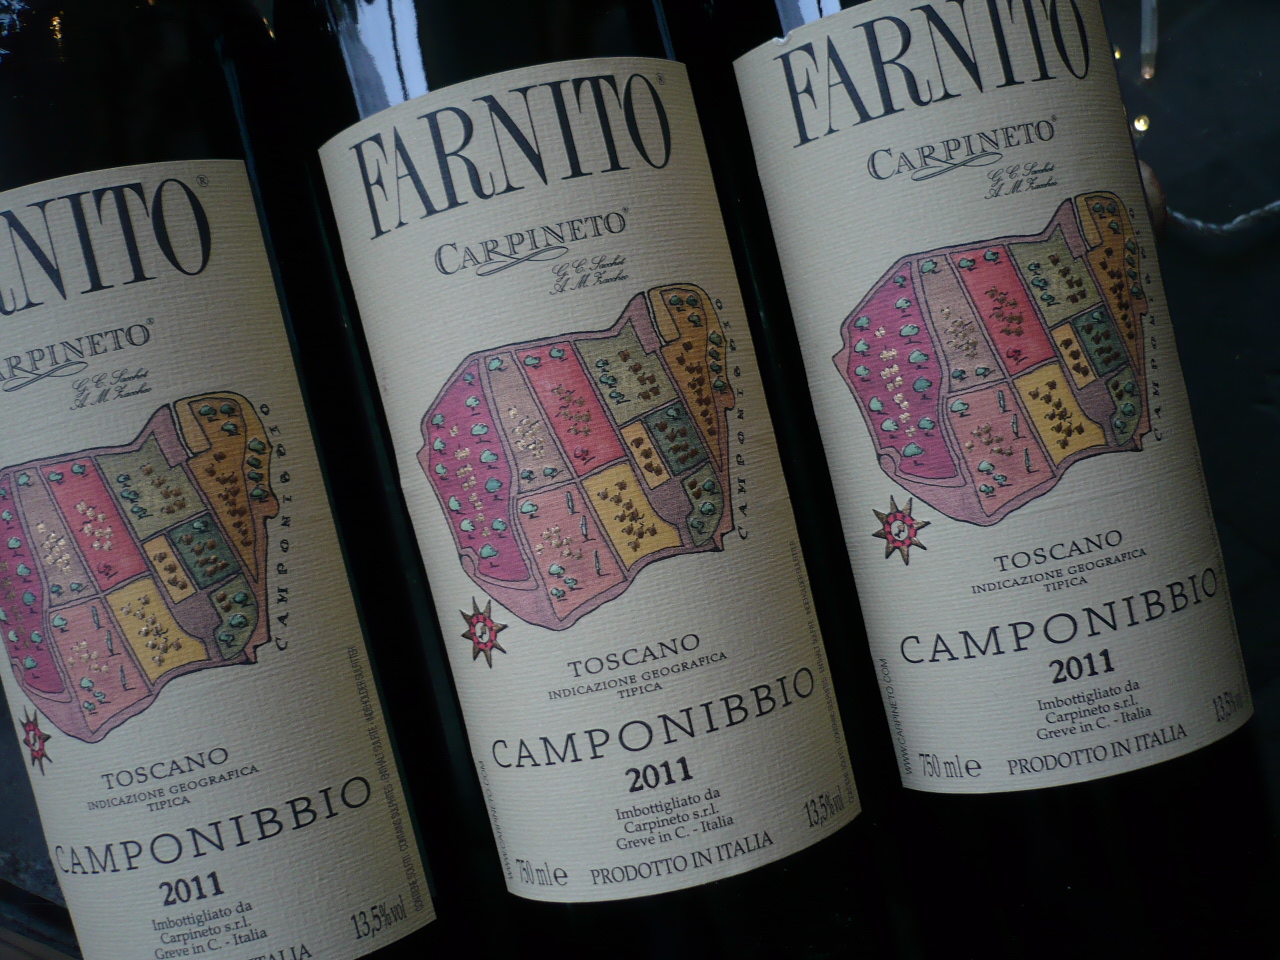 2011er CAMPONIBBIO Farnito igt, Carpineto -0,75l-